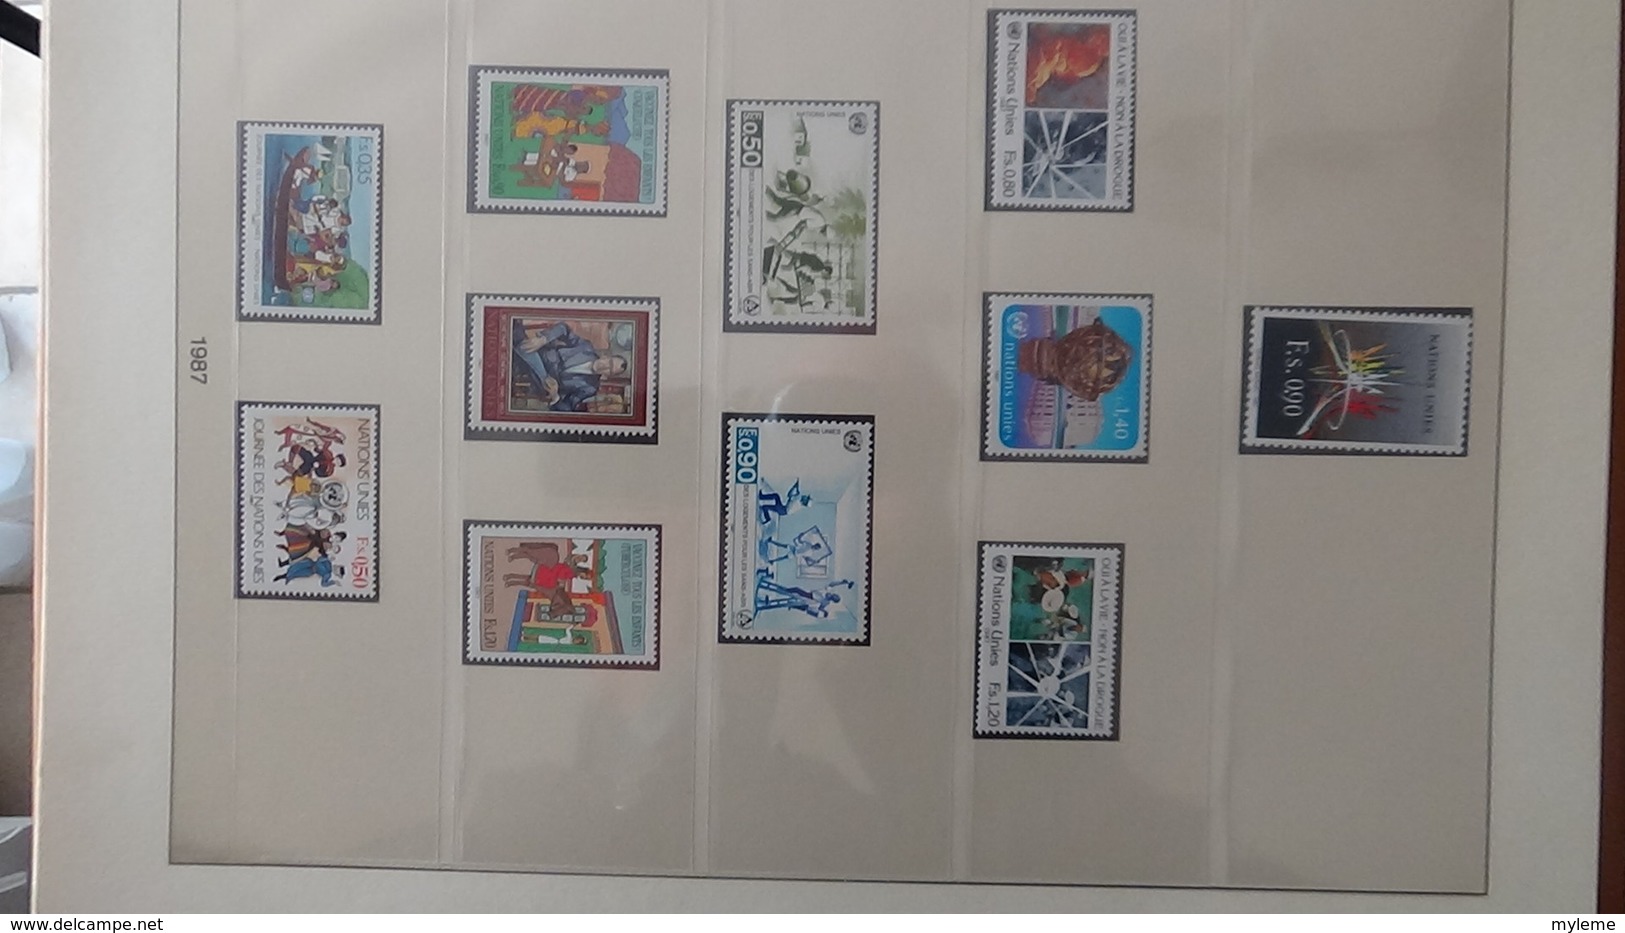 Belle collection album LINDNER del'ONU en blocs et timbres ** en 71 photos. A saisir !!!